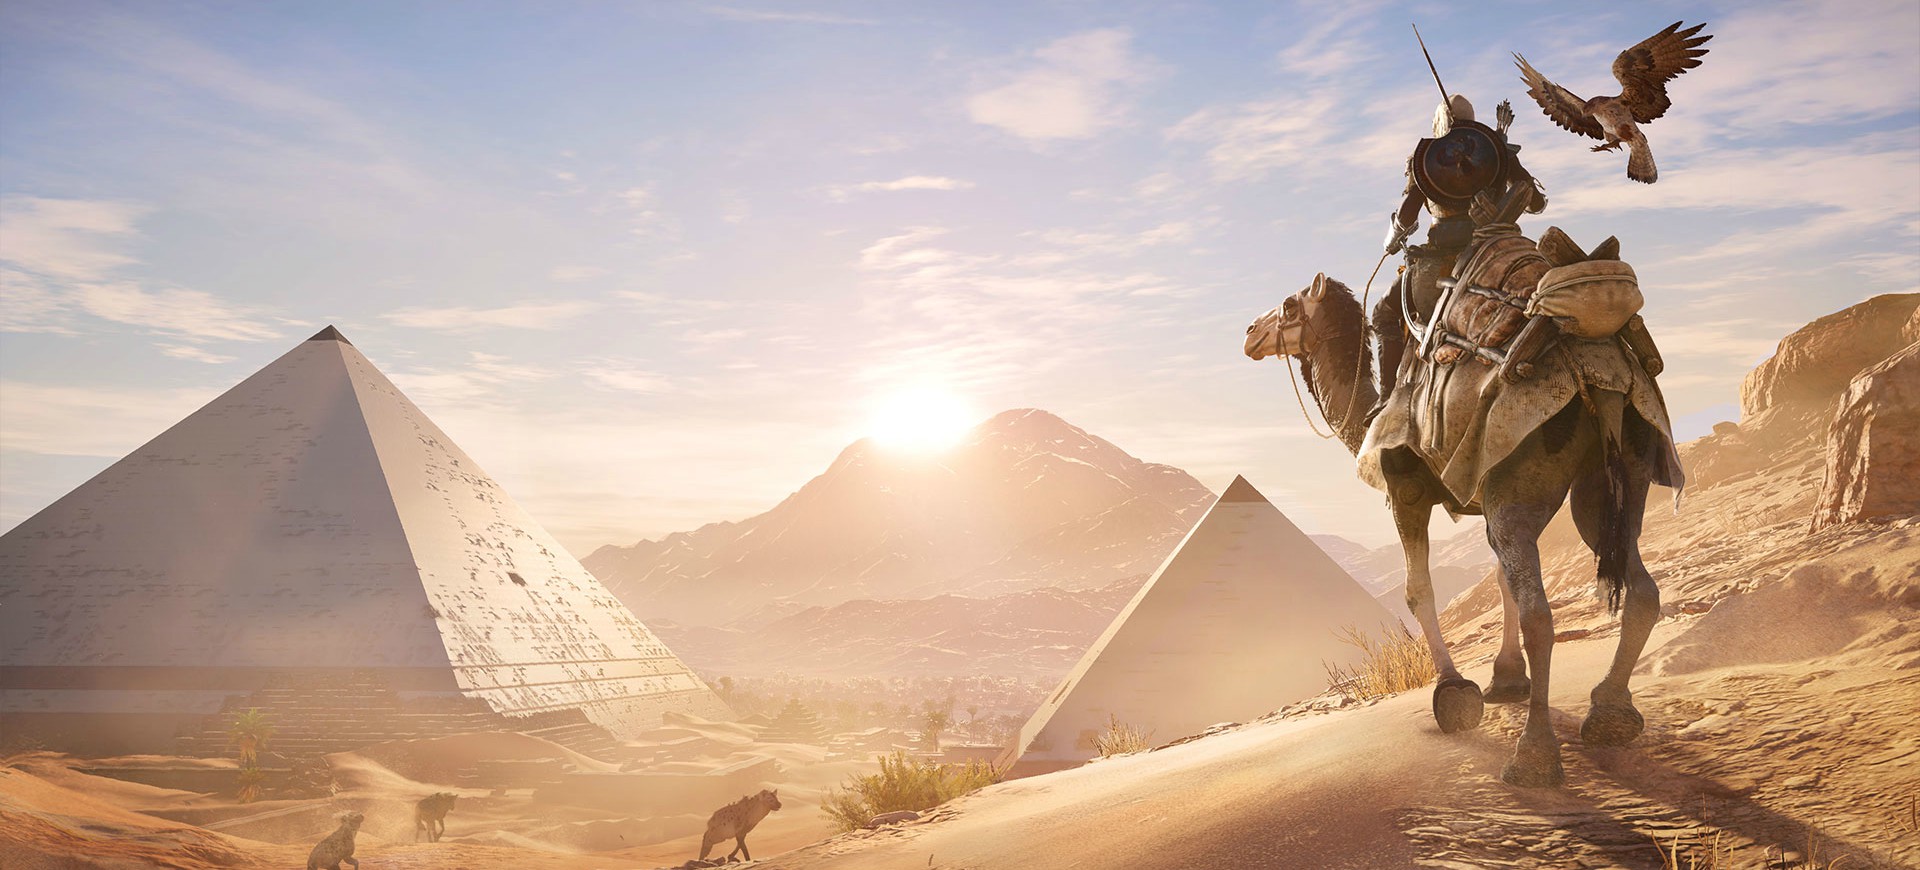 Assassin’s Creed Origins – 3 điều giúp bạn trở thành nhà sưu tầm vĩ đại